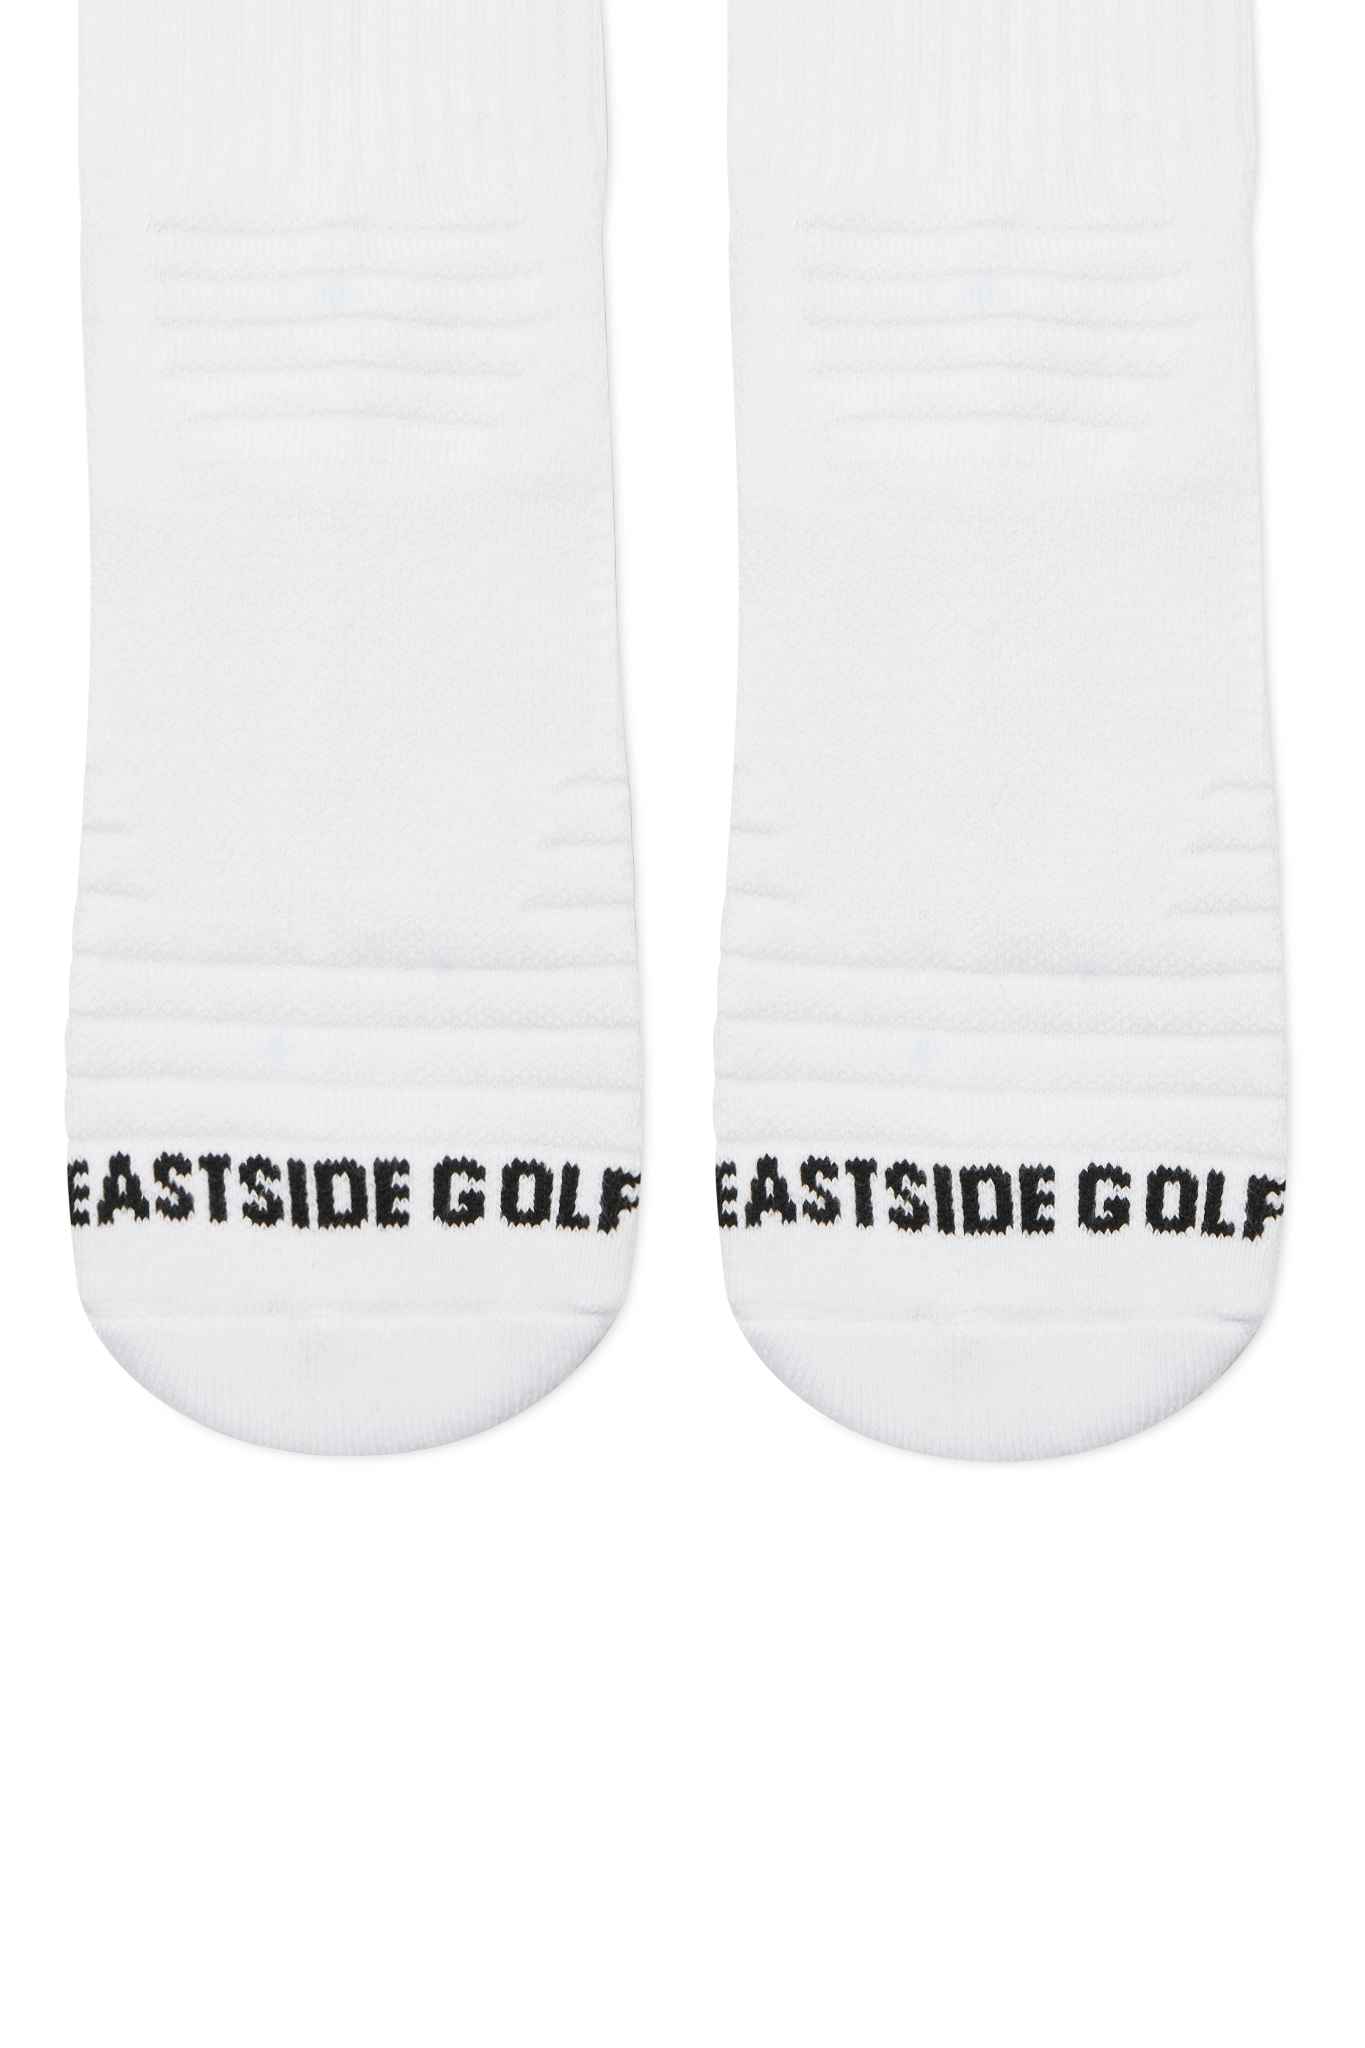 Eastside Golf 1961 Change Calf Sock White